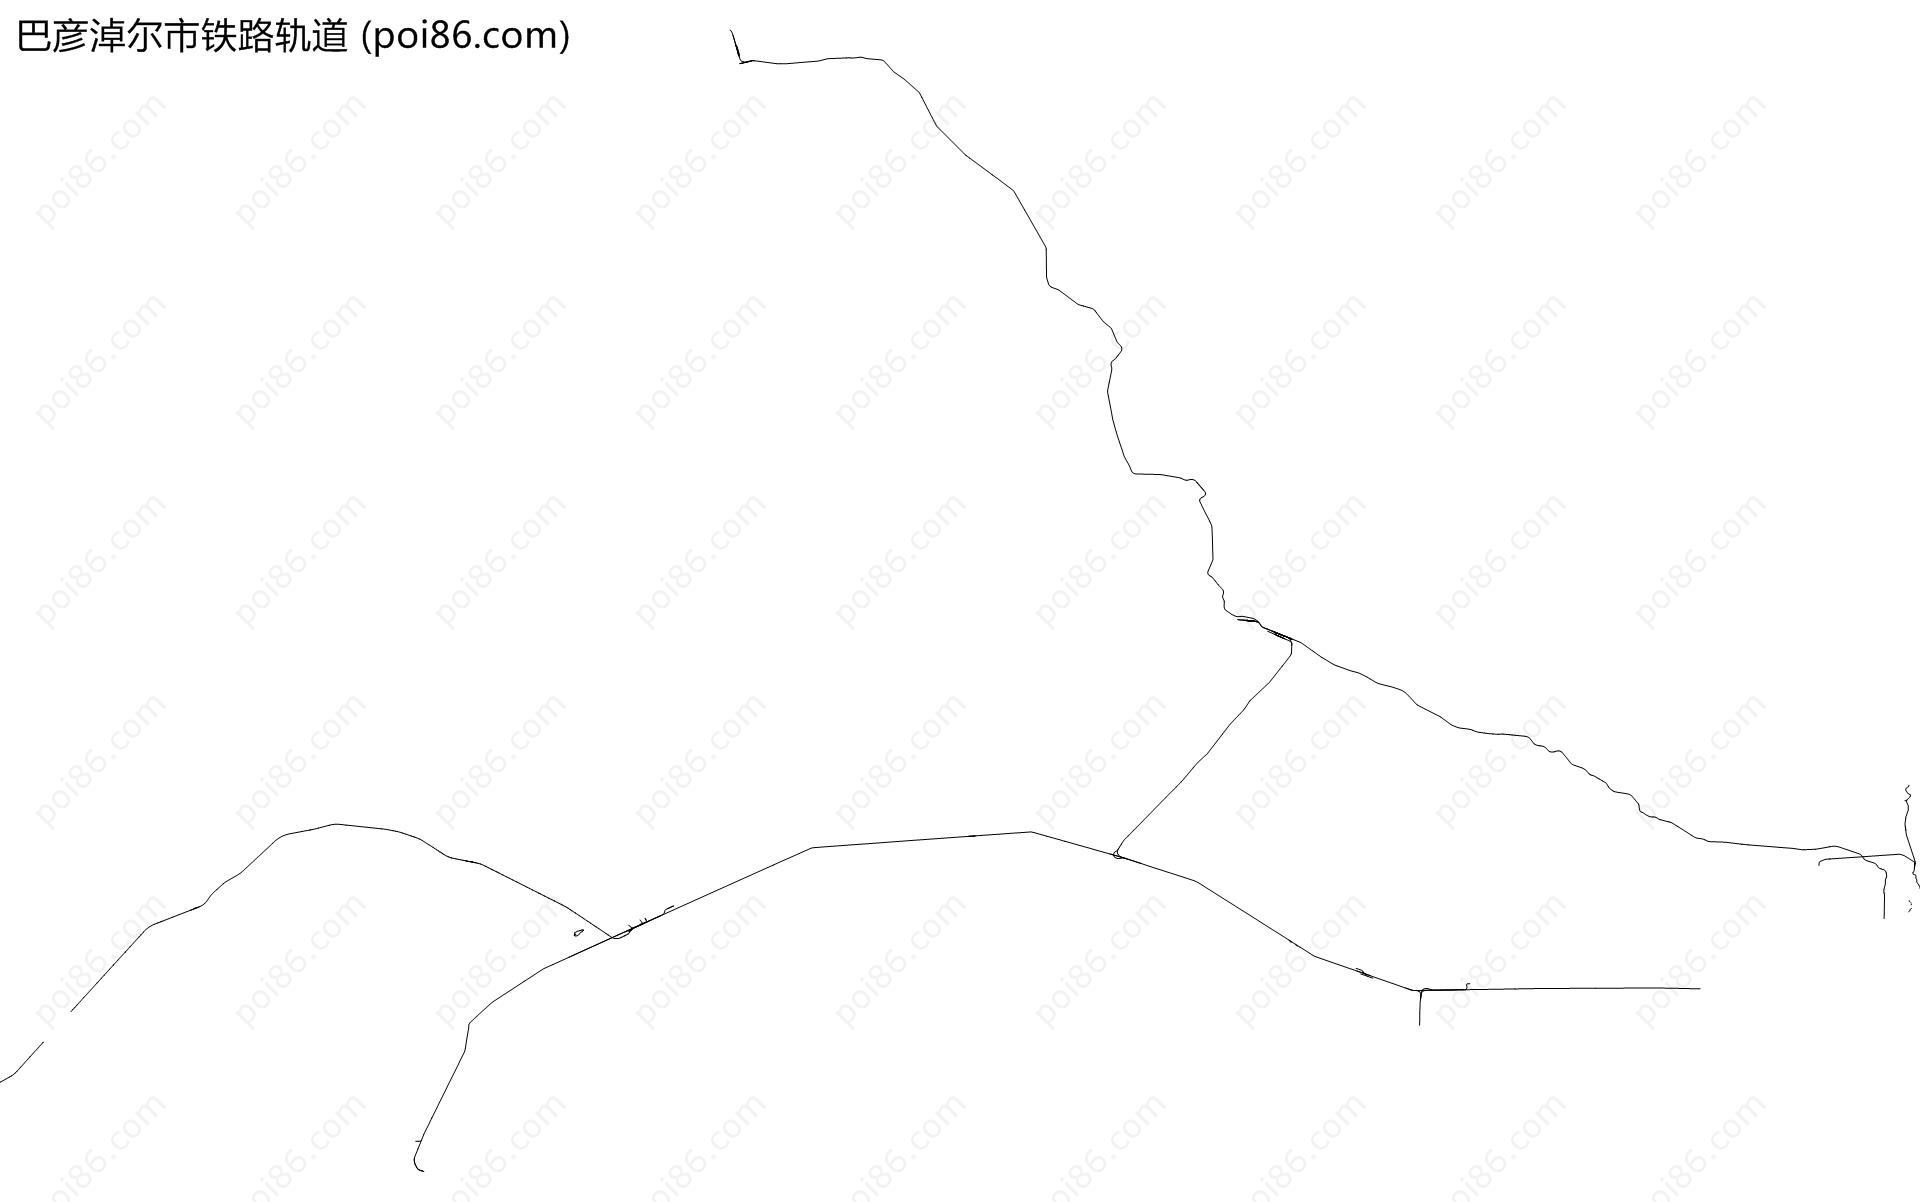 巴彦淖尔市铁路轨道地图